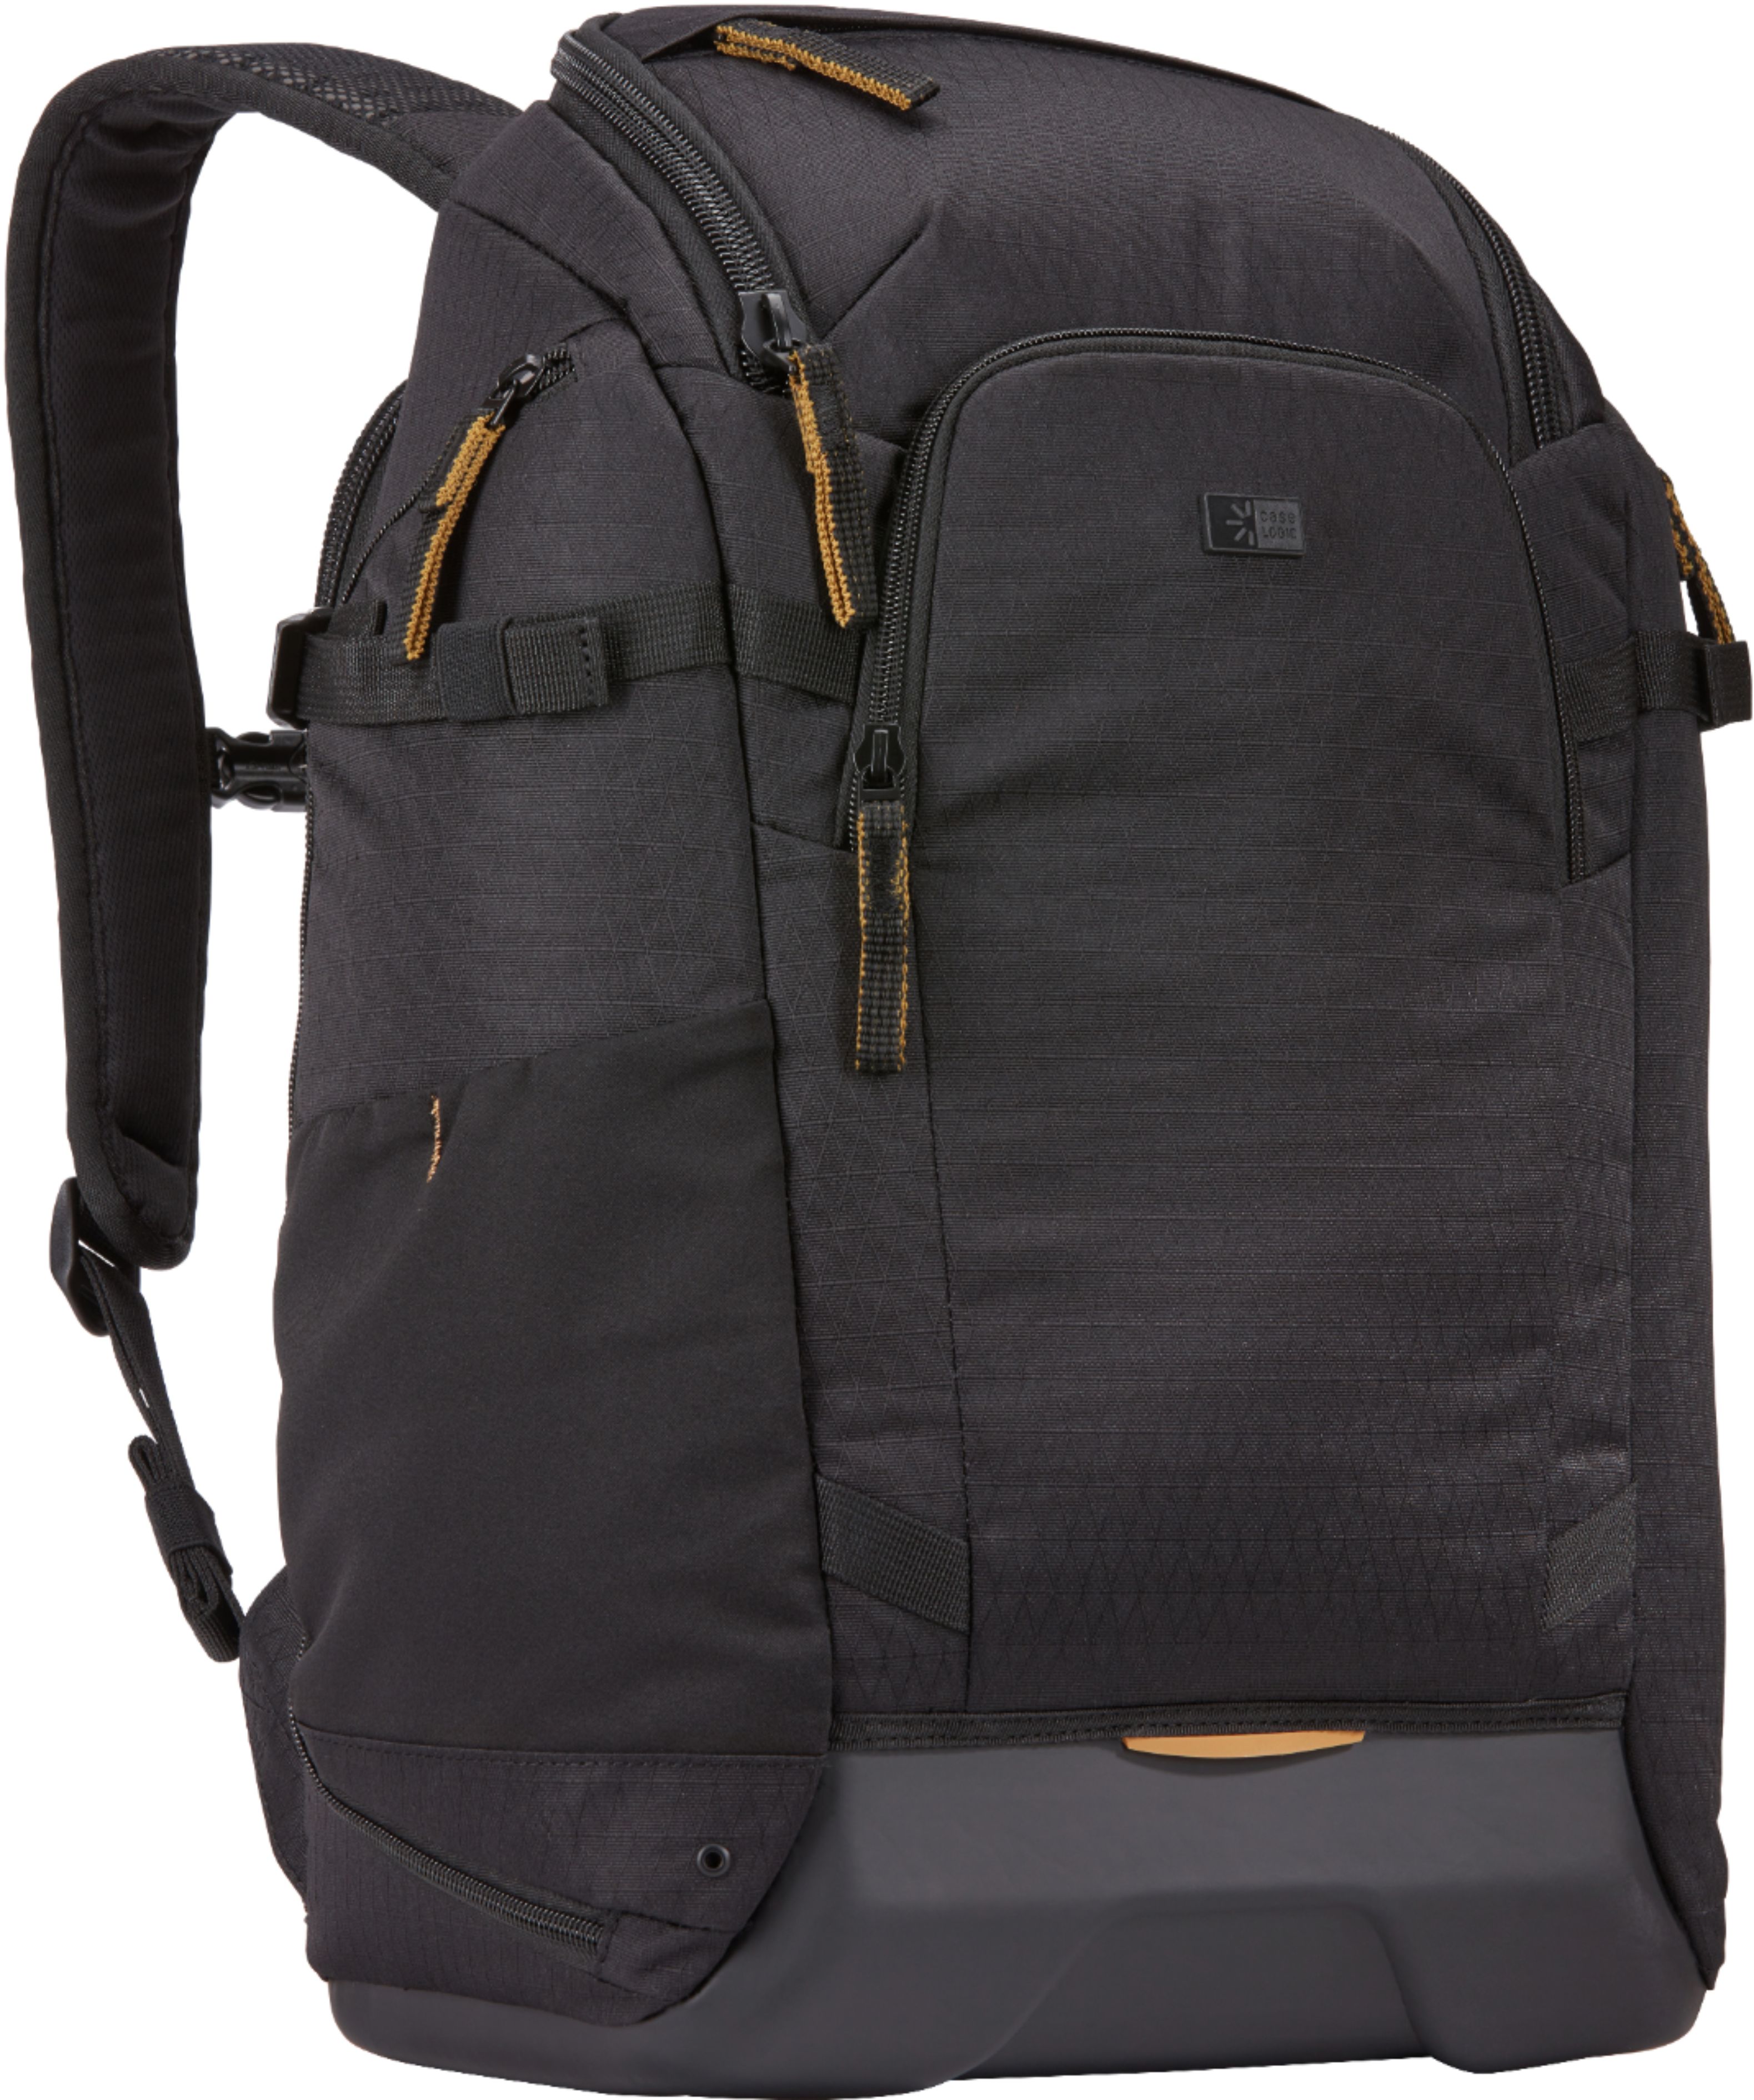 Left View: Peak Design - Everyday Backpack V2 20L - Black